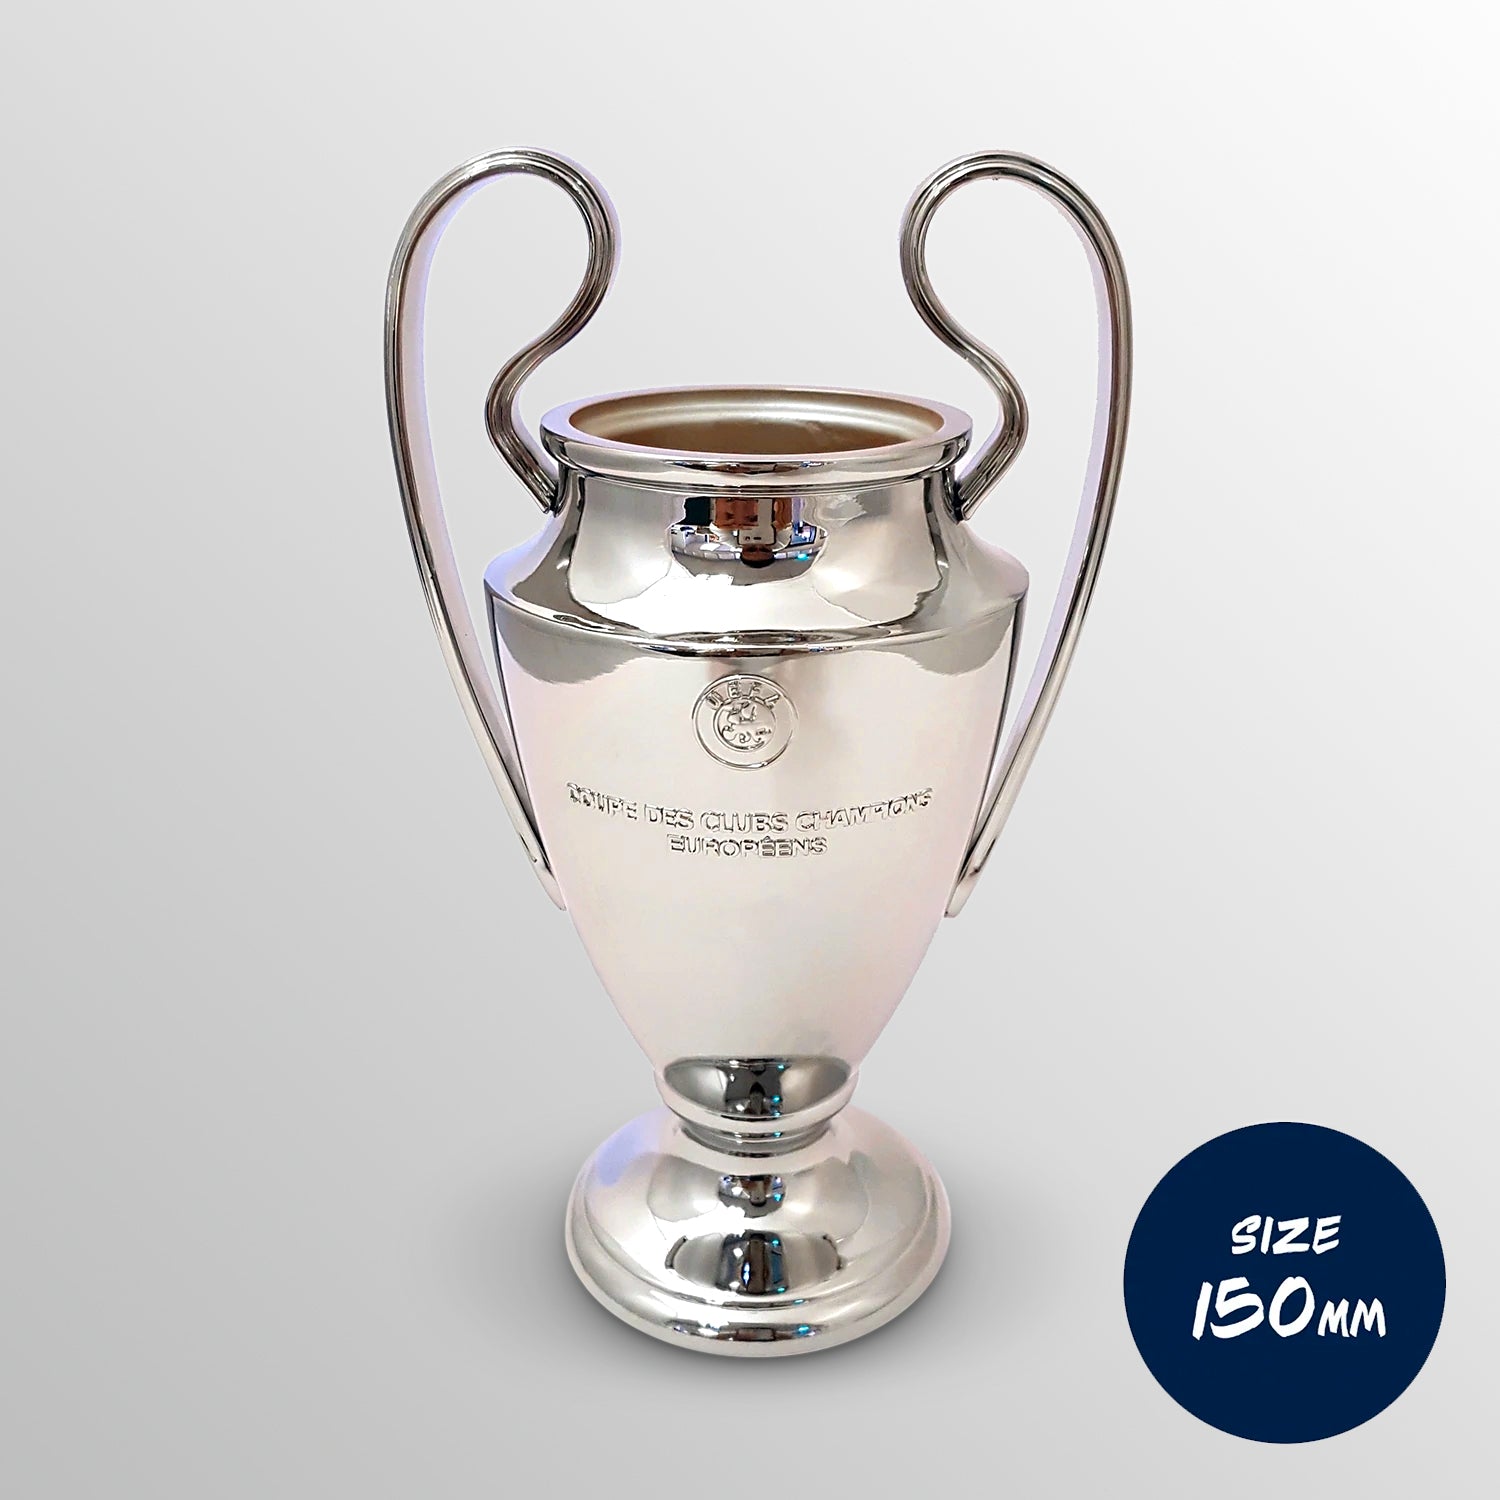 UEFA Champions League Souvenirs UEFA Club Competitions Online Store